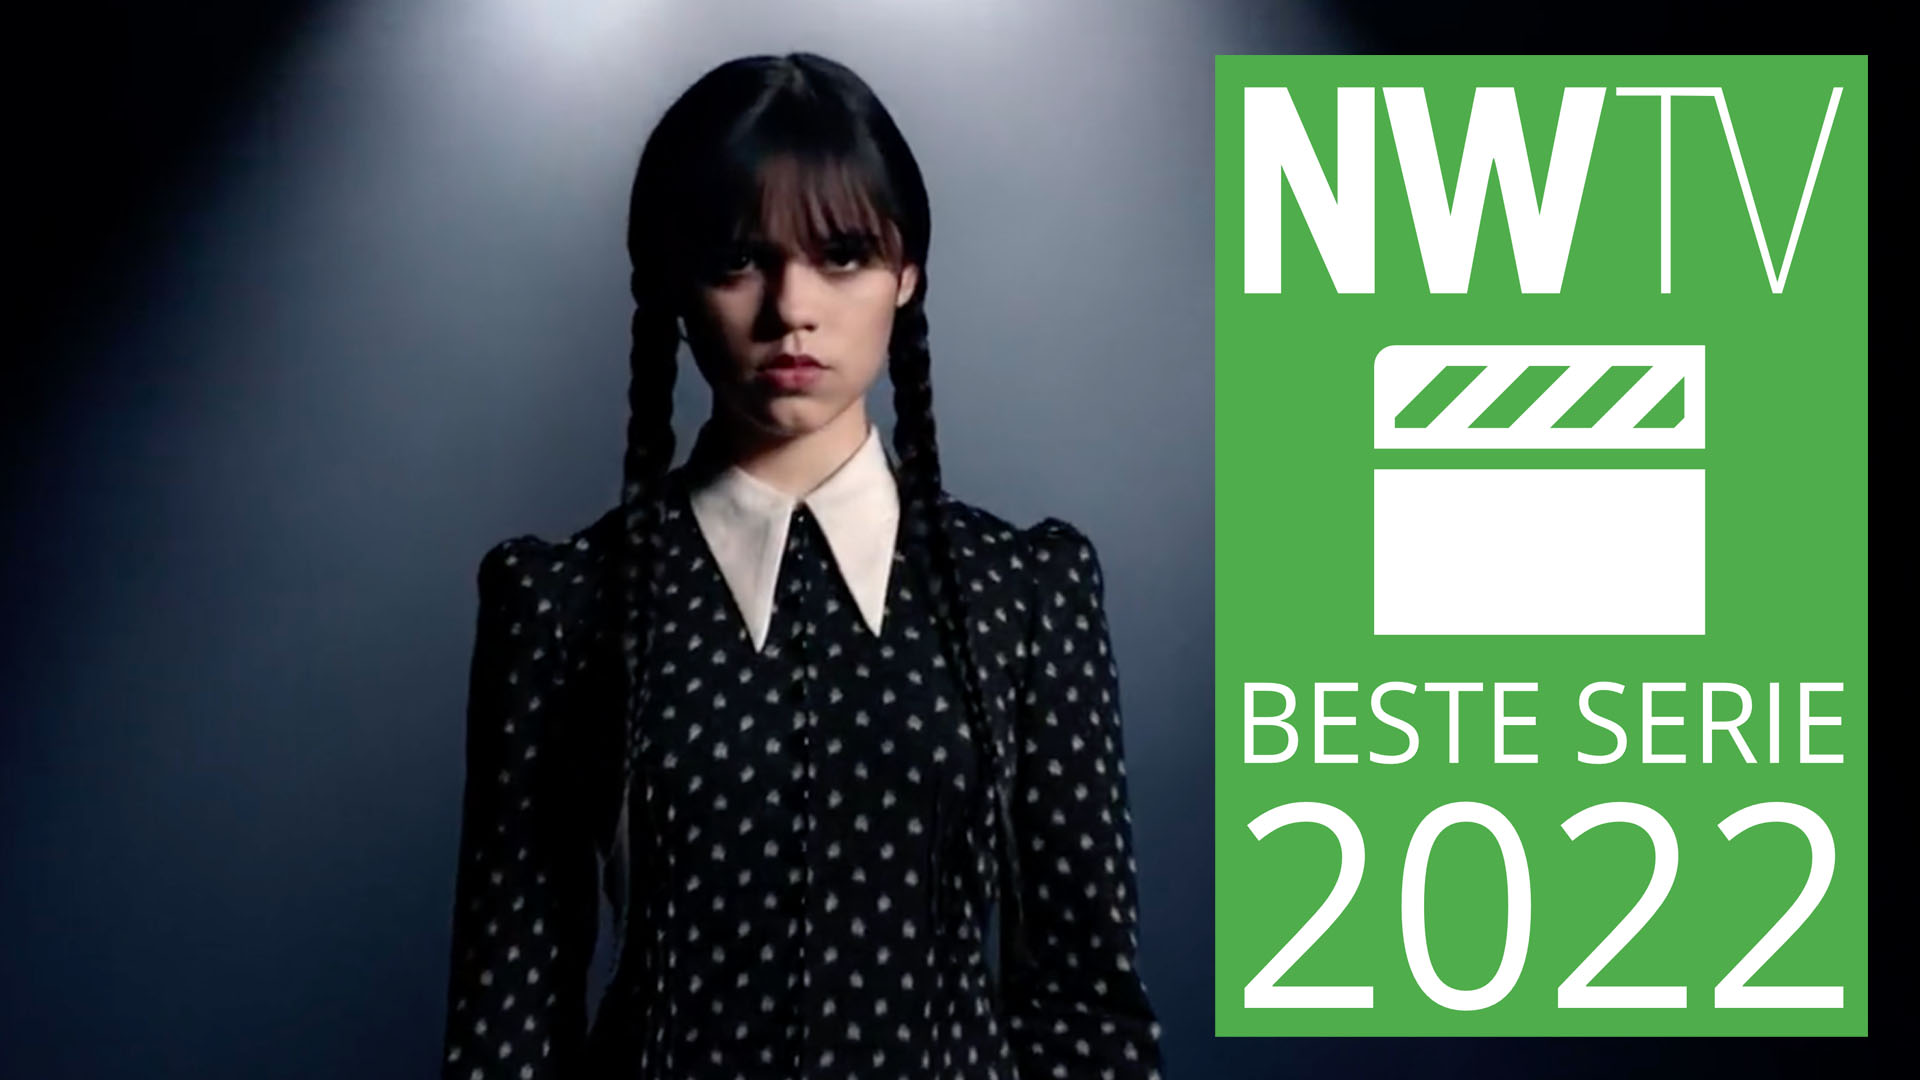 NWTV-Awards 2022: Wednesday is de beste serie van 2022